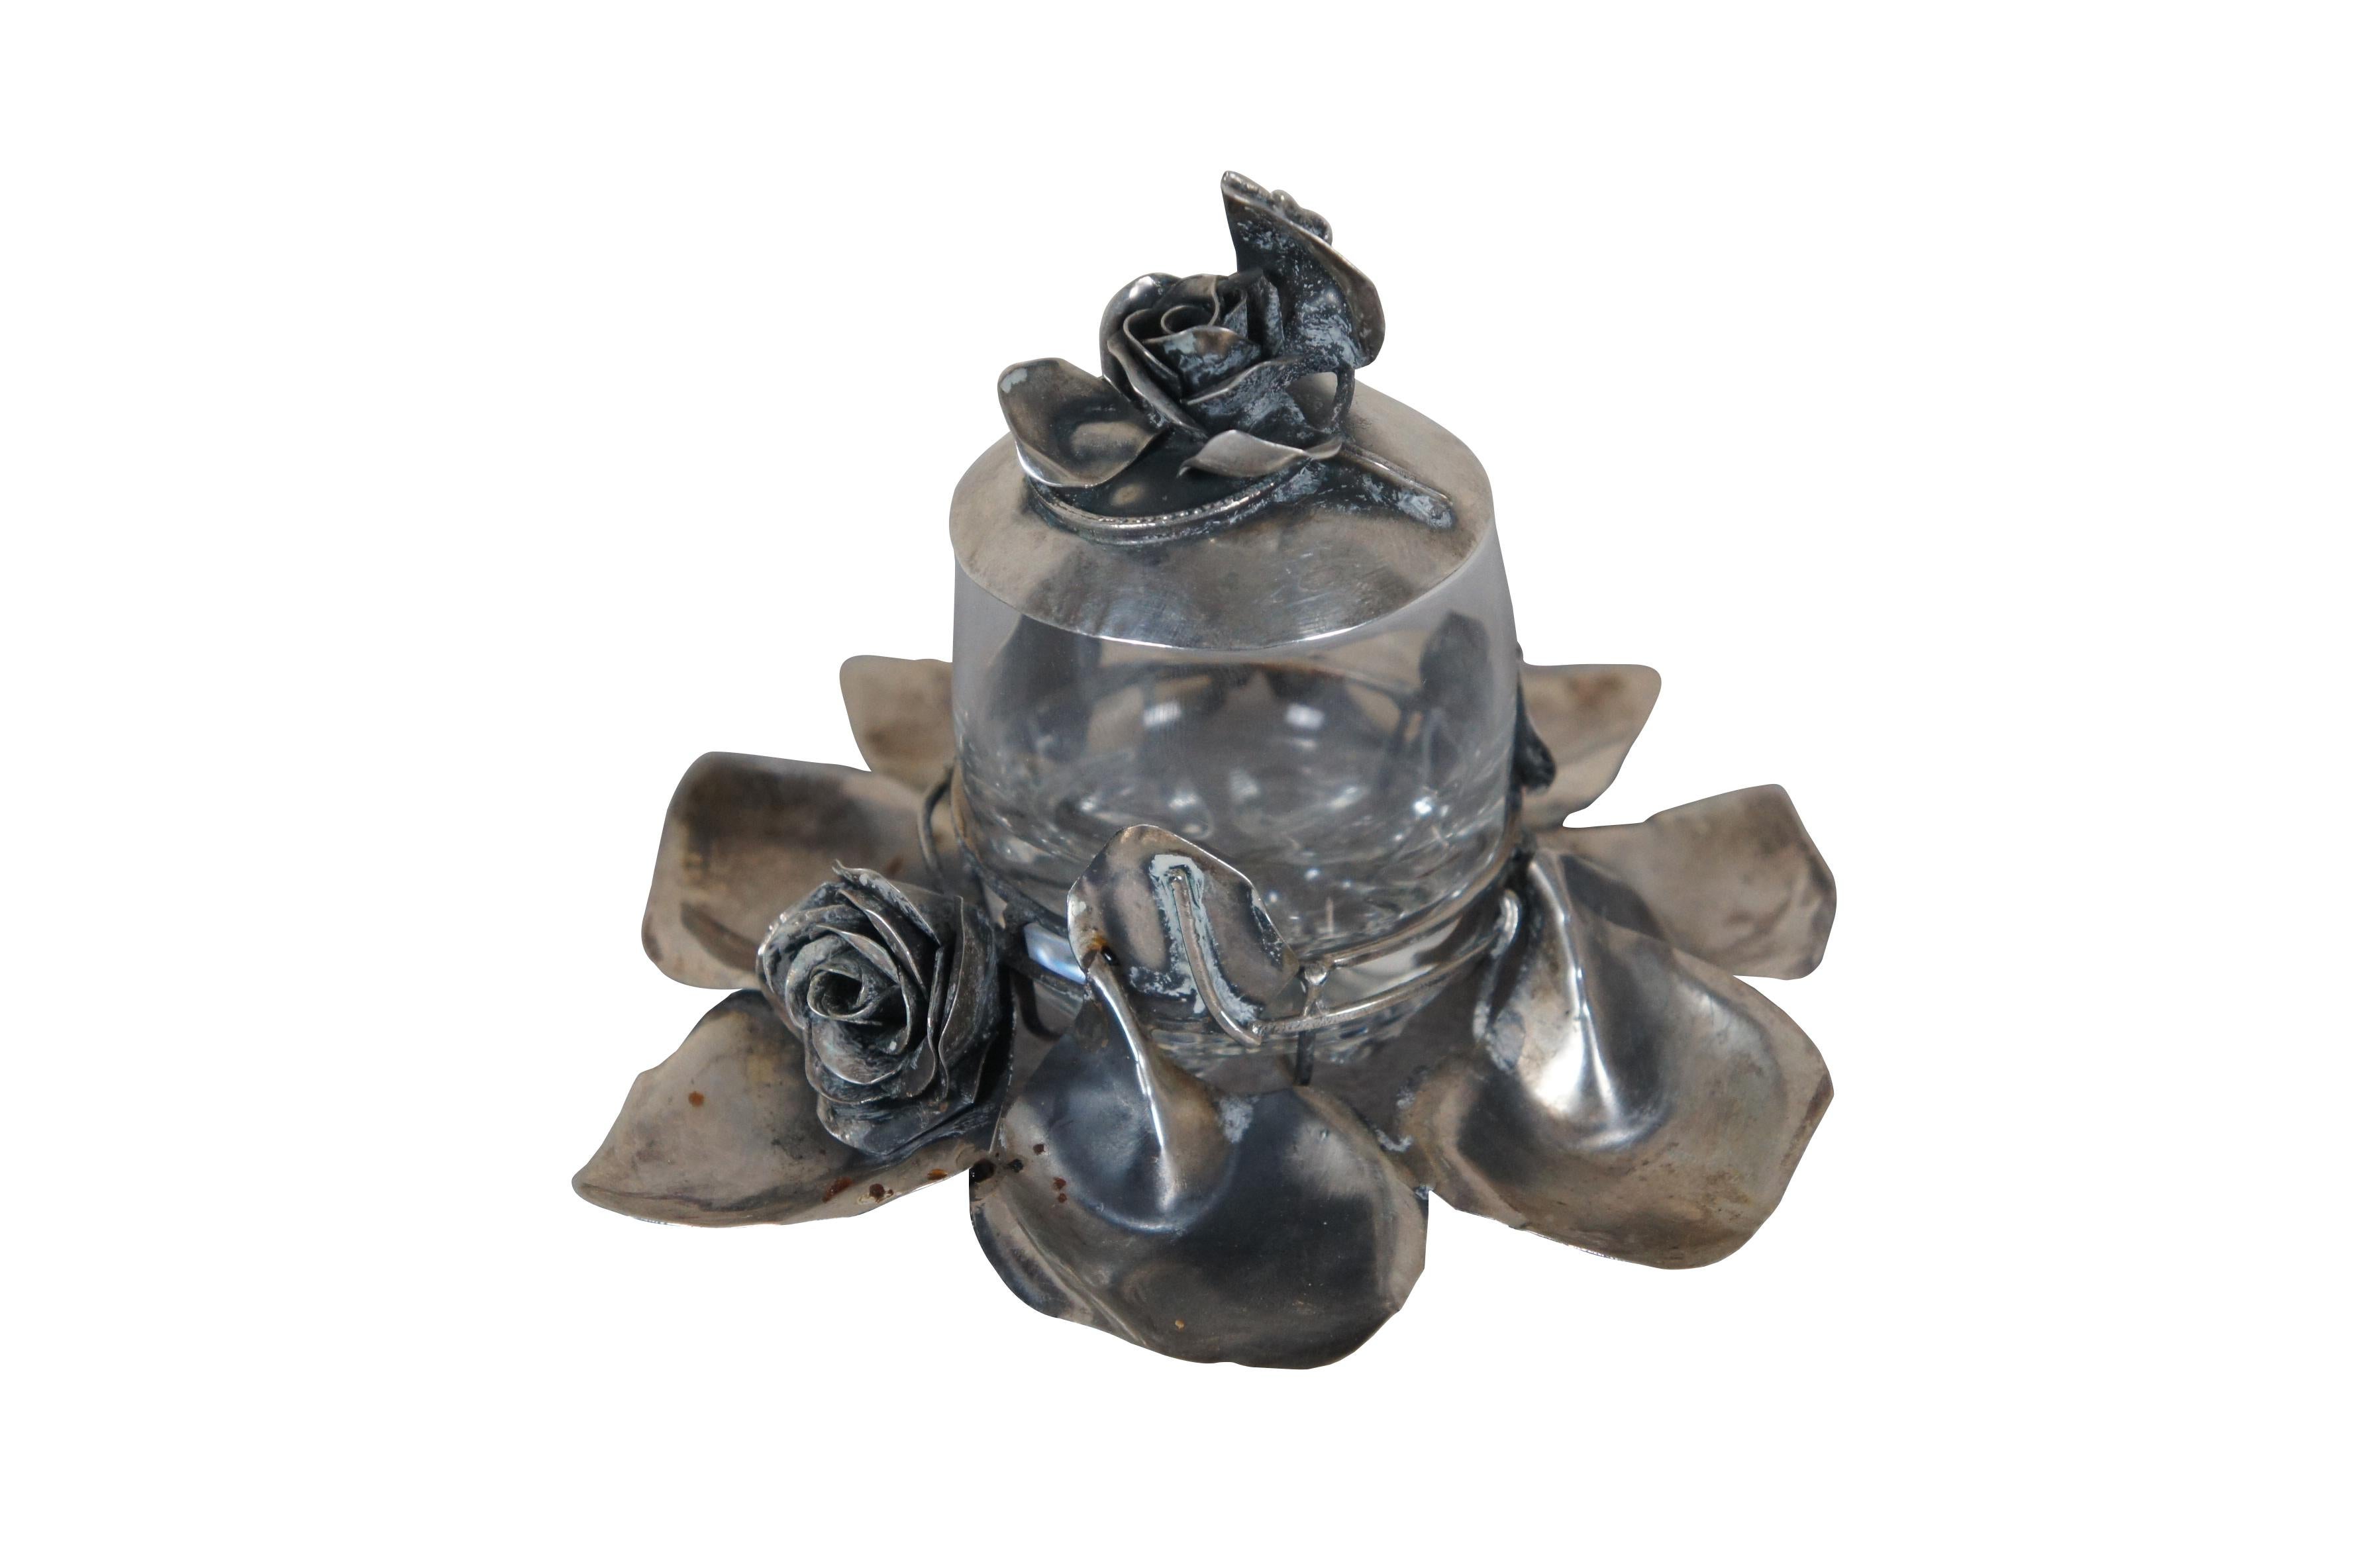 Mitte des 20. Jahrhunderts Gewürz-/Senf-/Marmeladentopf/Zuckerwürfelschale mit rundem Glasgefäß, eingebettet in einen Sockel aus Blättern und einer einzelnen Rosenblüte, mit passendem Deckel aus 925er Sterlingsilber. Handgefertigt von dem